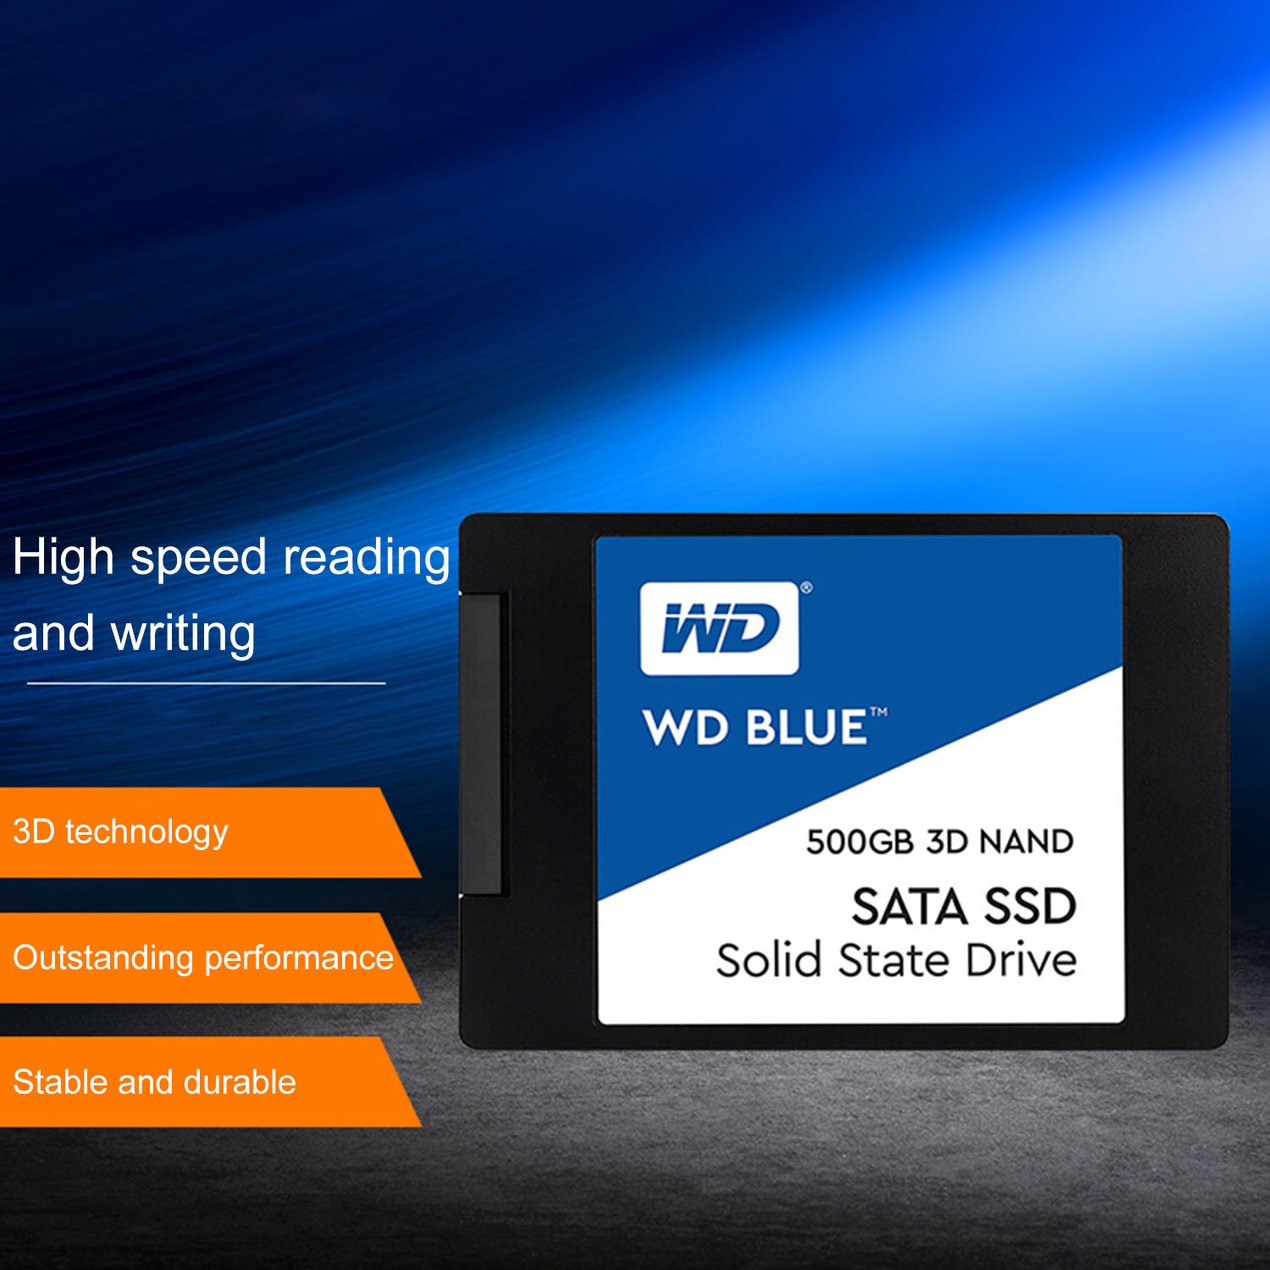 ภาพประกอบของ ขายดี!!!Western Digital 2.5 "SSD 250G 500GB 1T WD Blue SATA III ไดรฟ์ Solid State ภายใน560เมกะไบต์/วินาทีสำหรับเดสก์ท็อปแล็ปท็อป 3 ปี